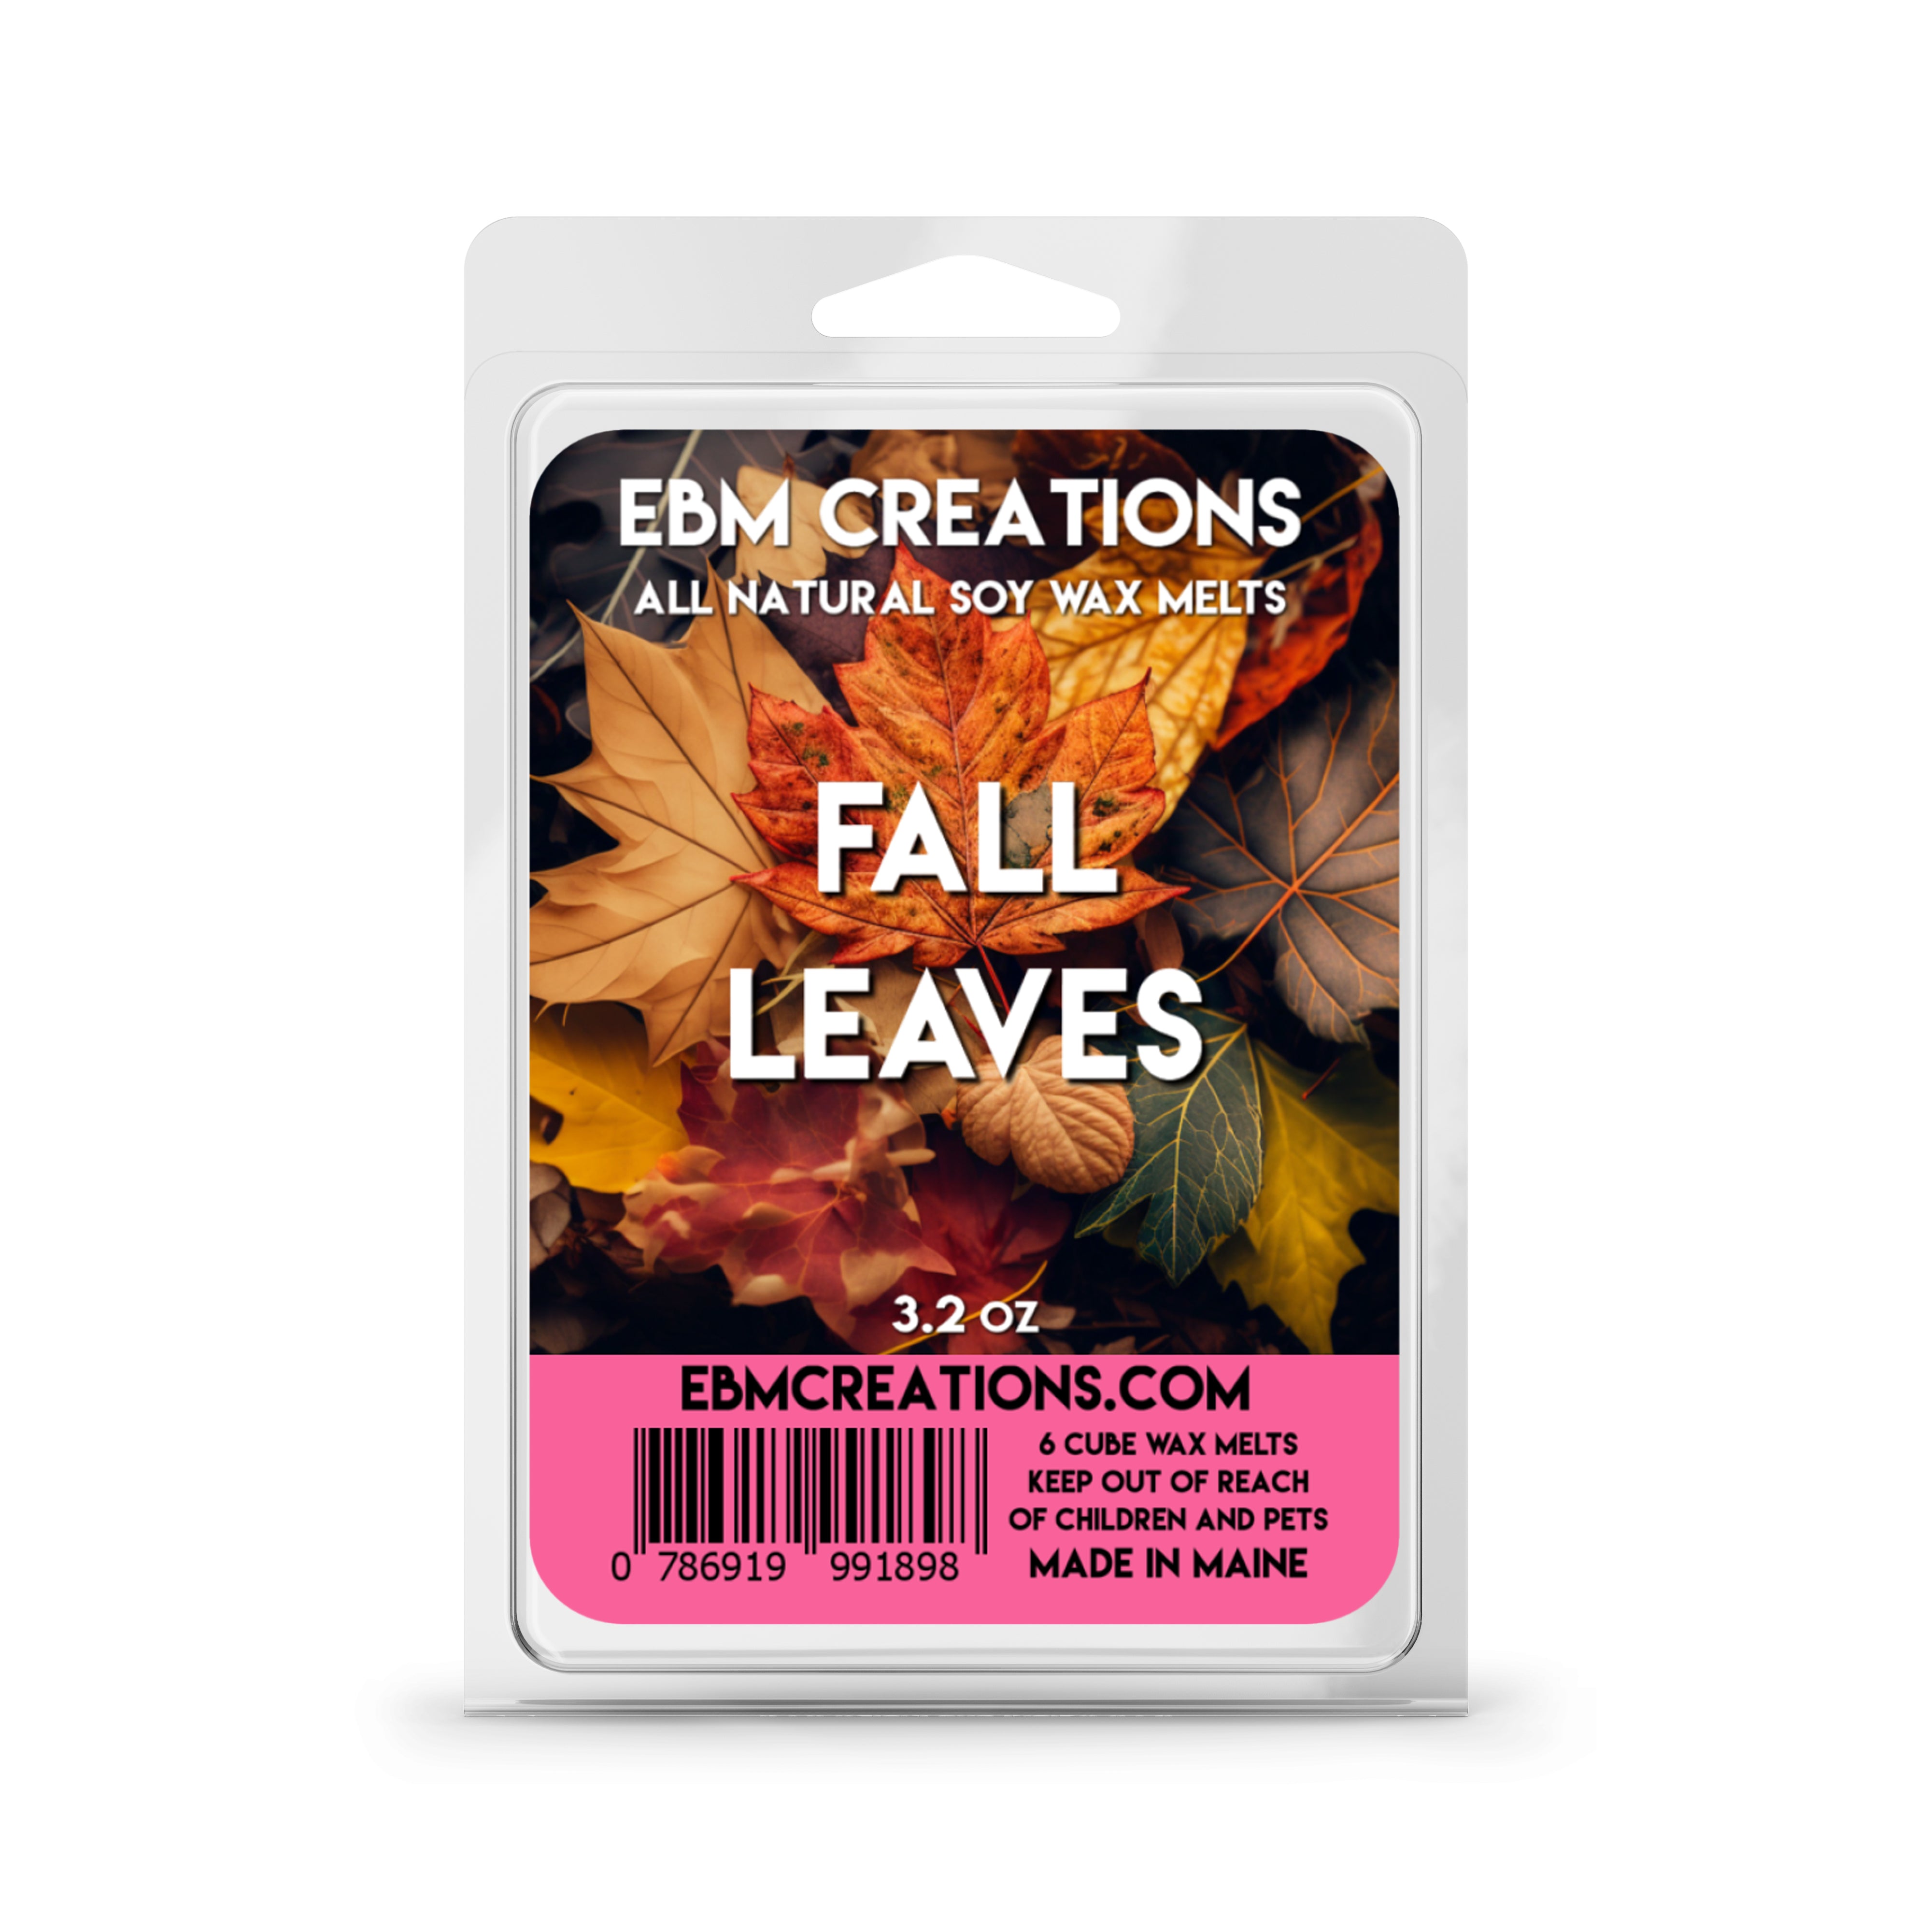 Fall Leaves - 3.2 oz Clamshell